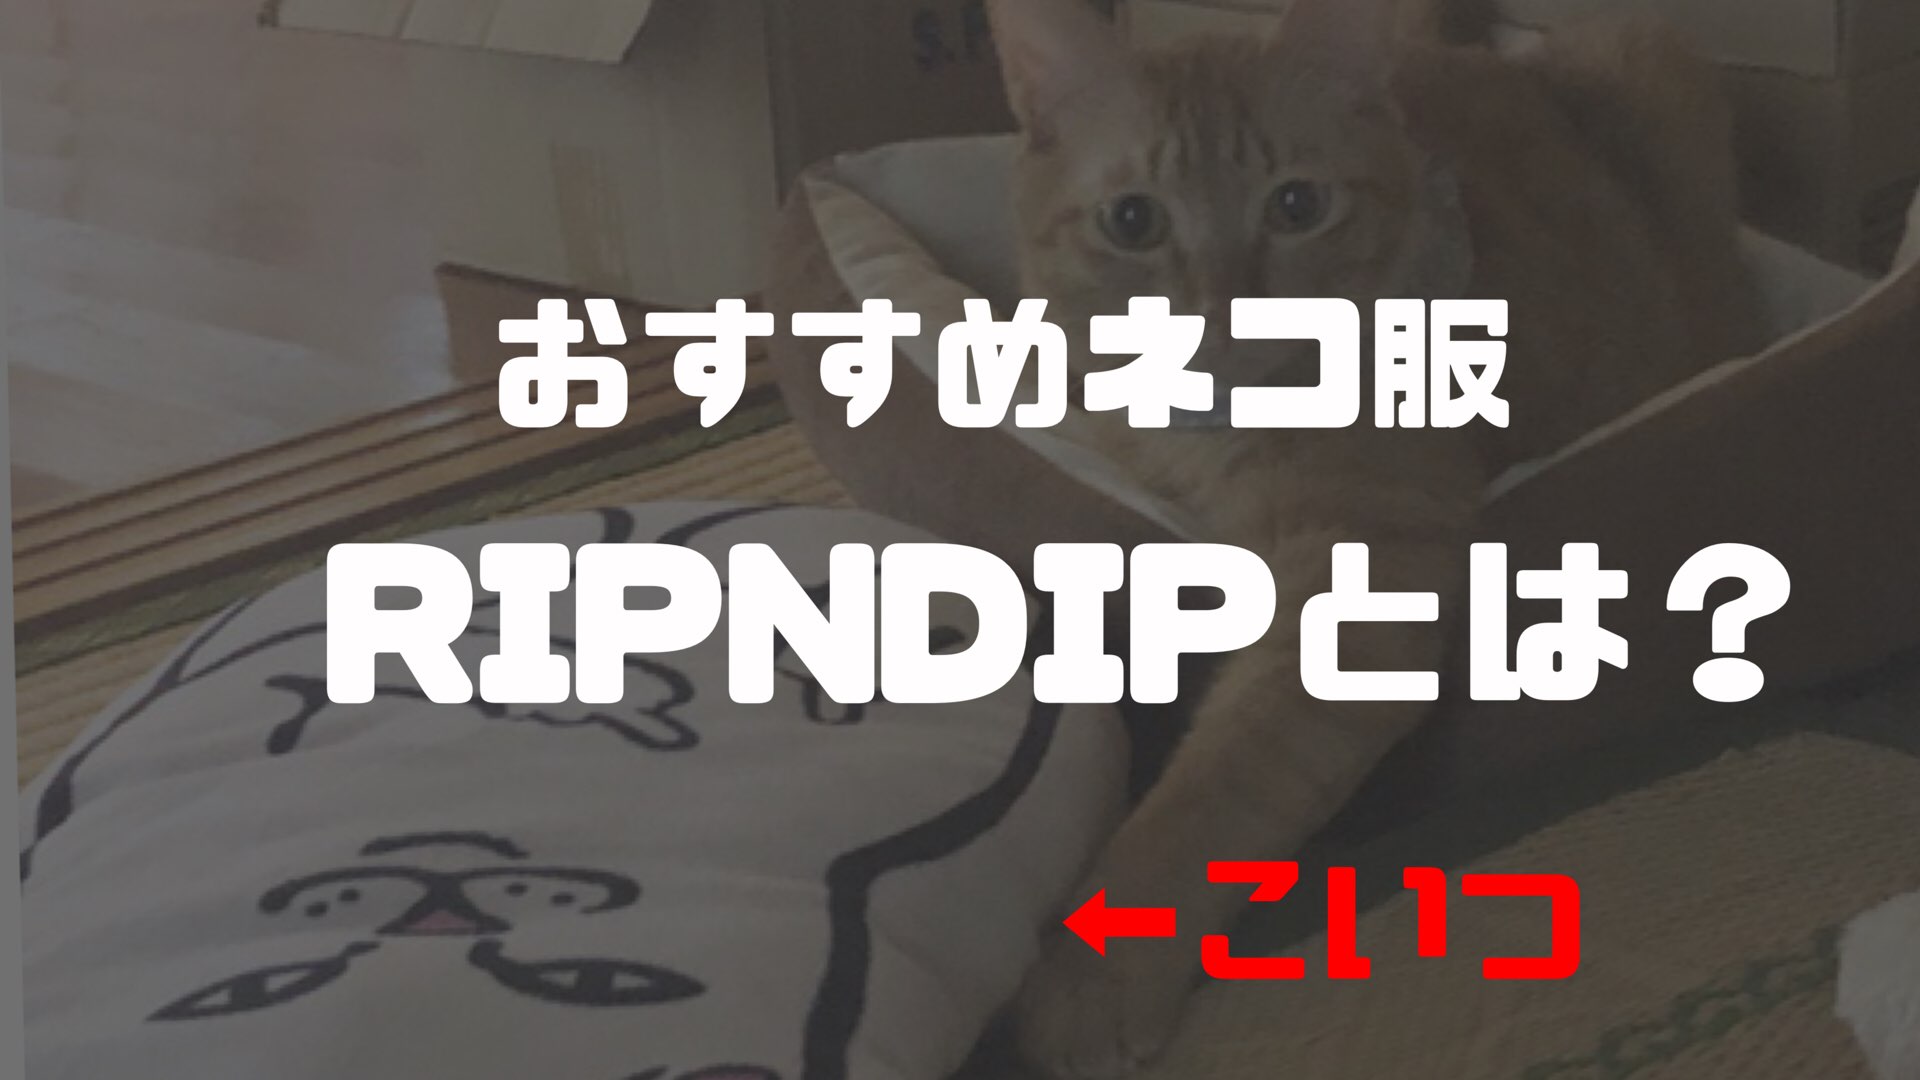 ねこ好き必見 Supreme並みに人気 中指立てたネコが有名な Ripndip